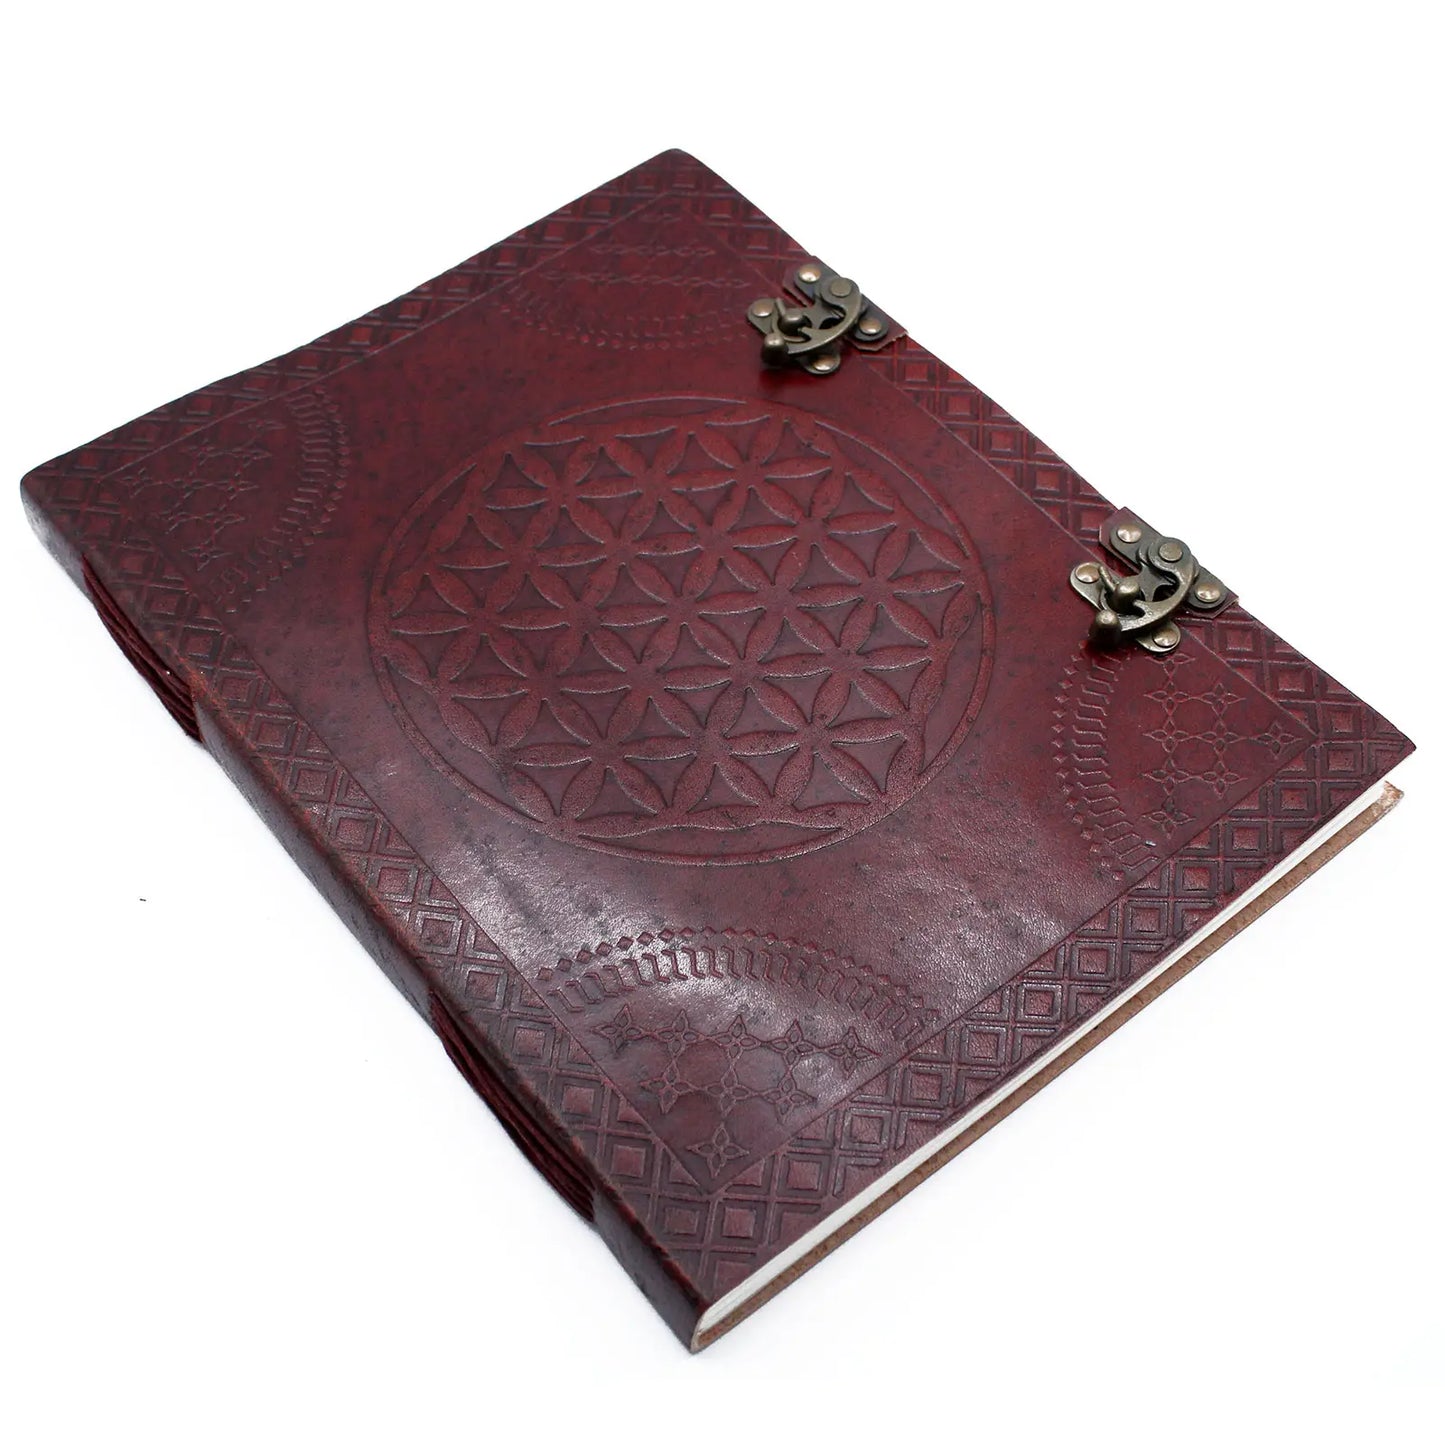 Leather journal - Spellbound